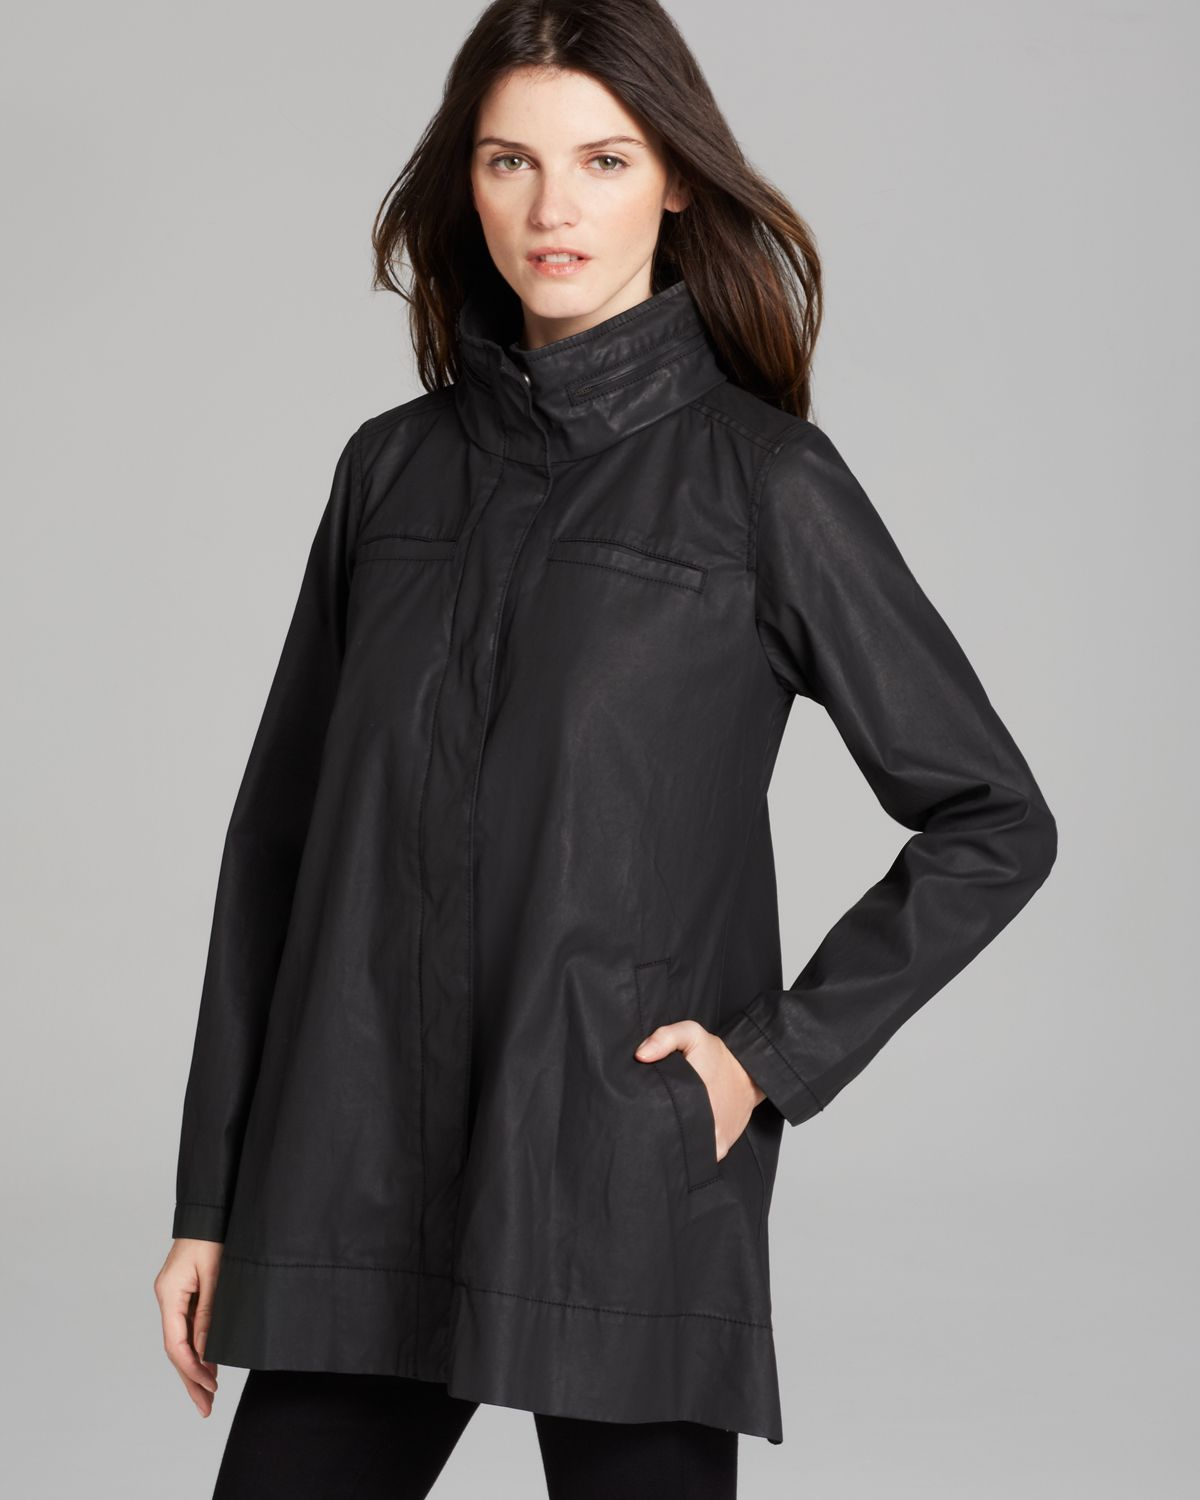 Eileen Fisher Aline Jacket with Hidden Hood in Black | Lyst